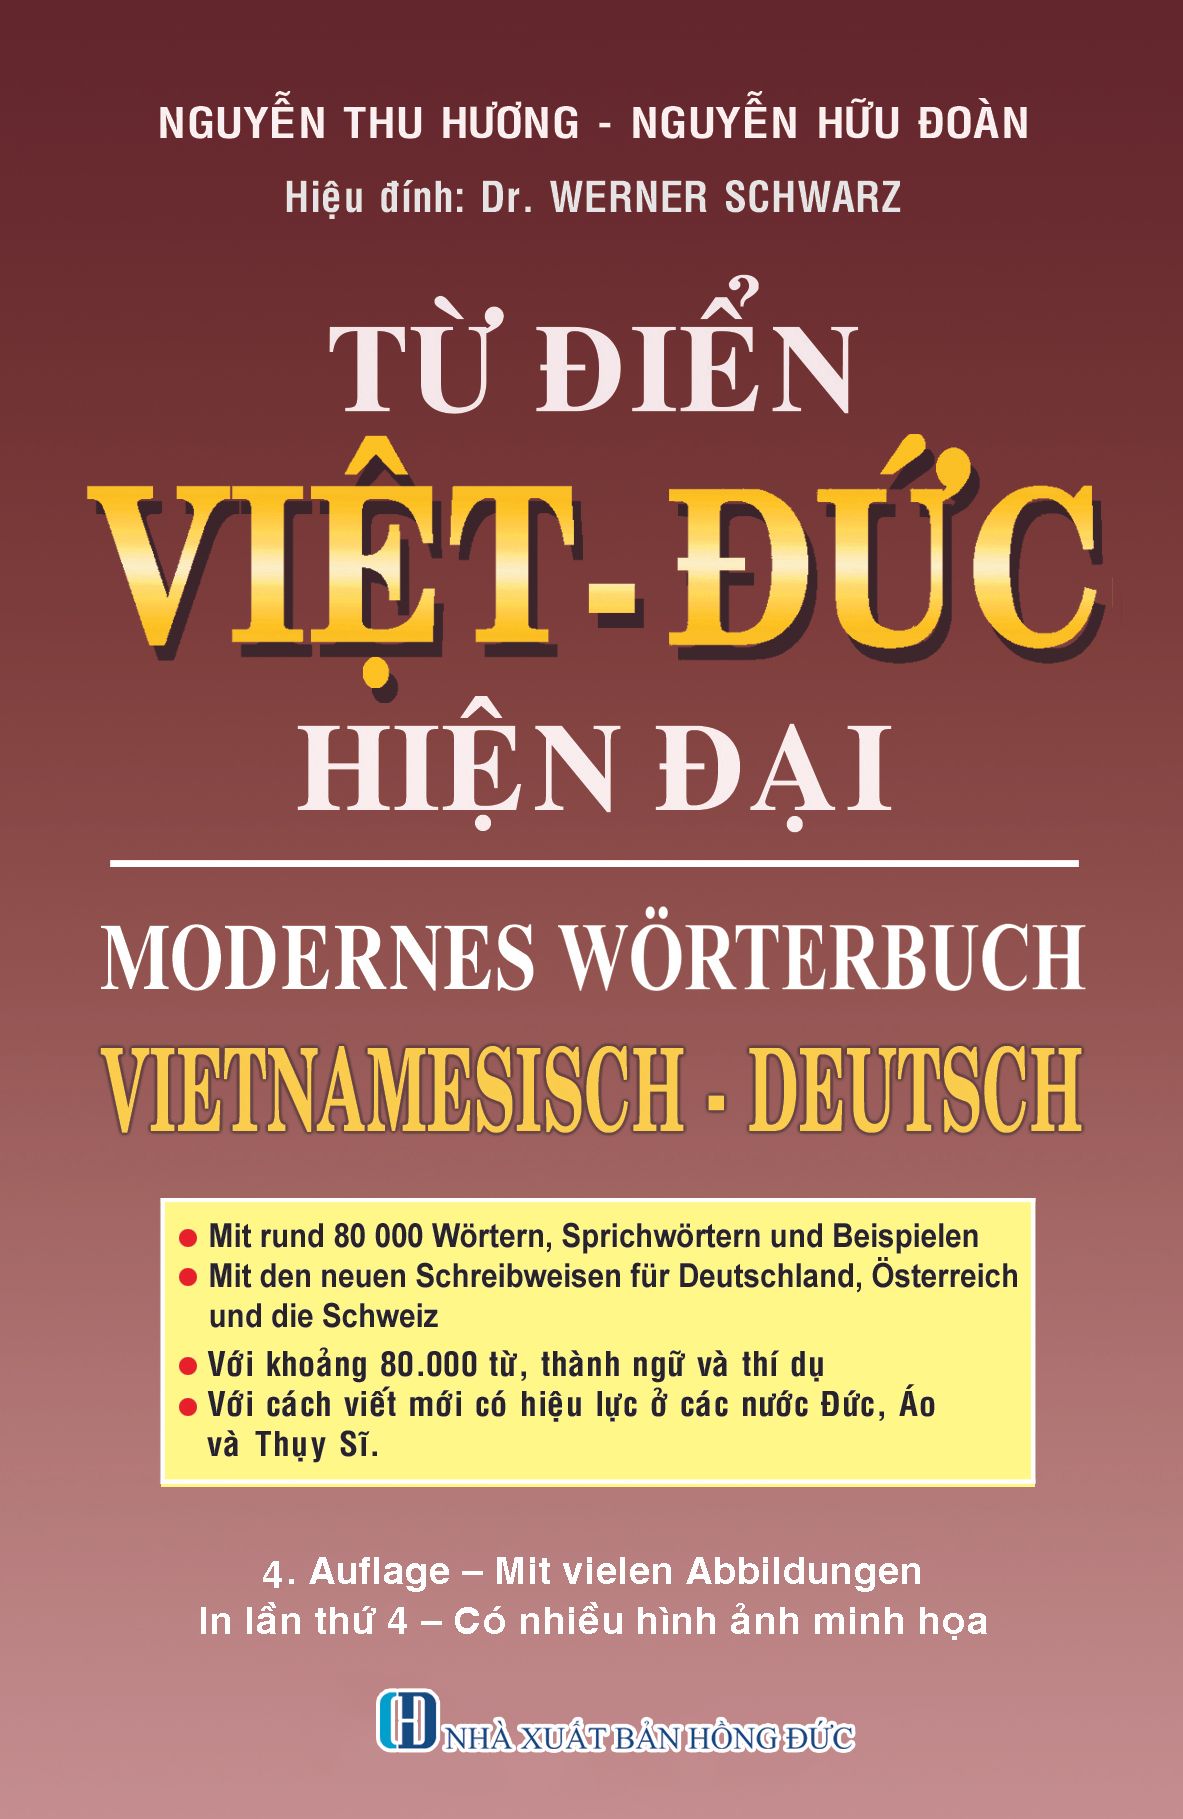 MODERNES WÖRTERBUCH VIETNAMESISCH - DEUTSCH